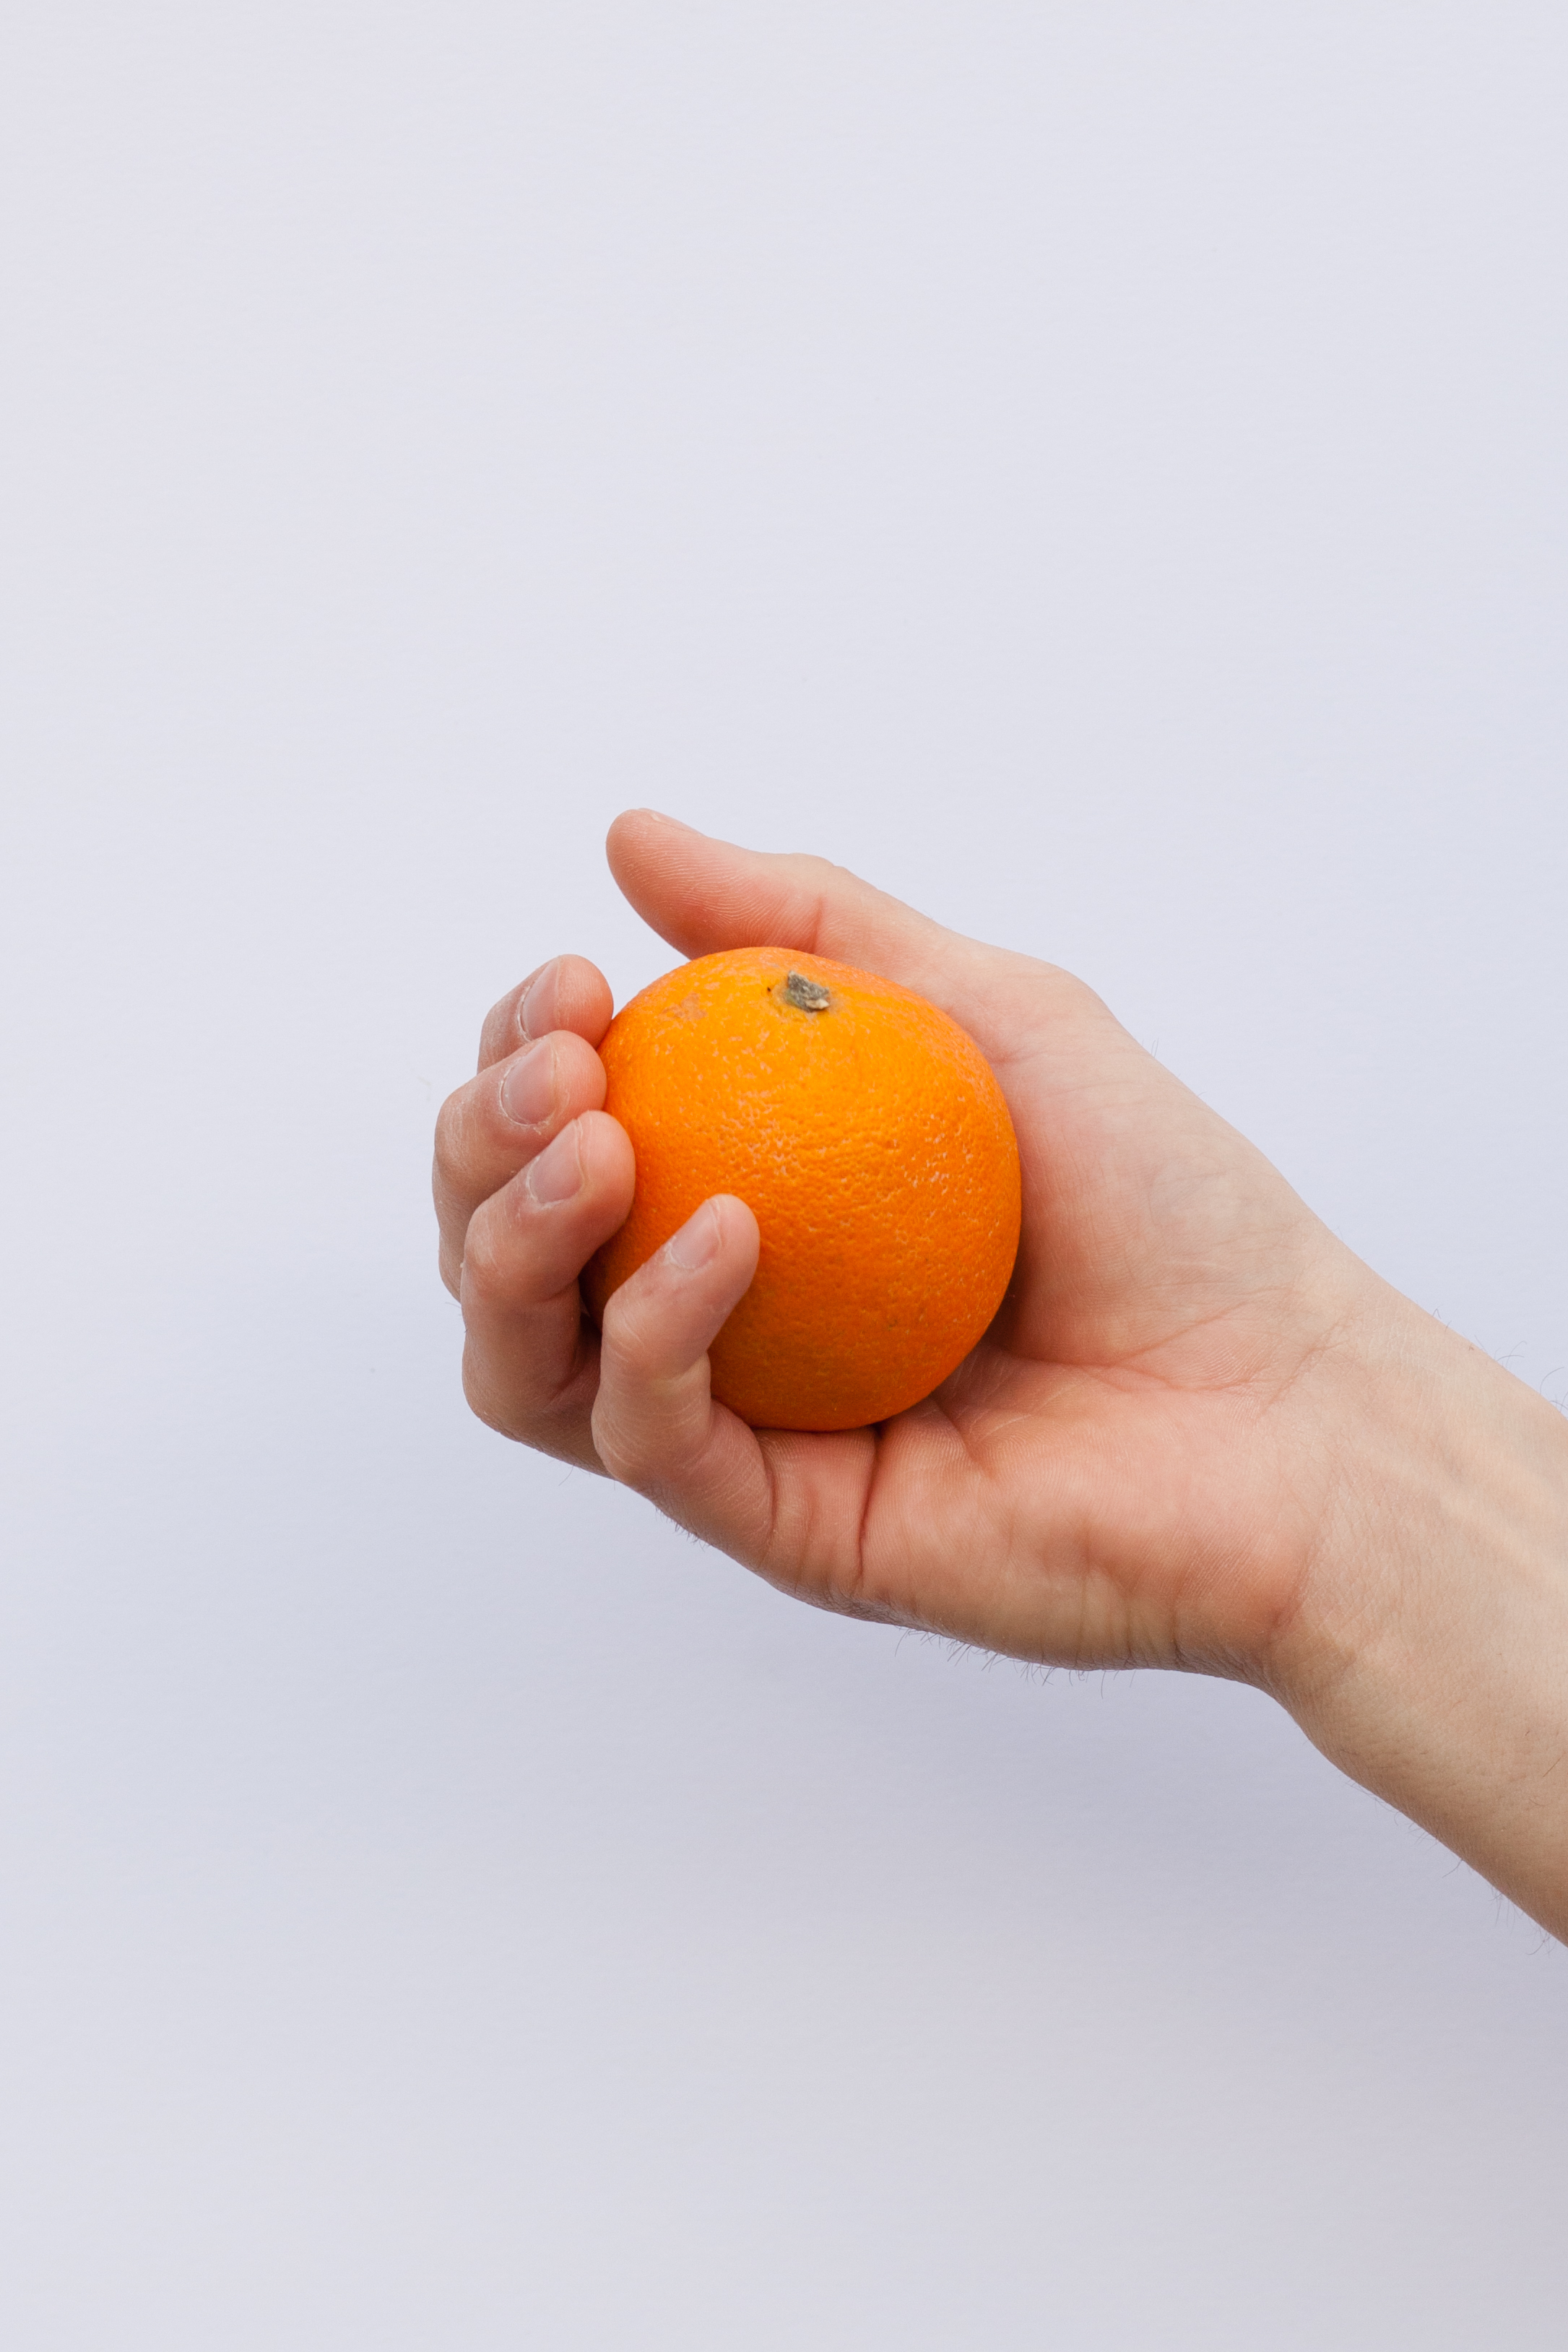 Orange held in hand